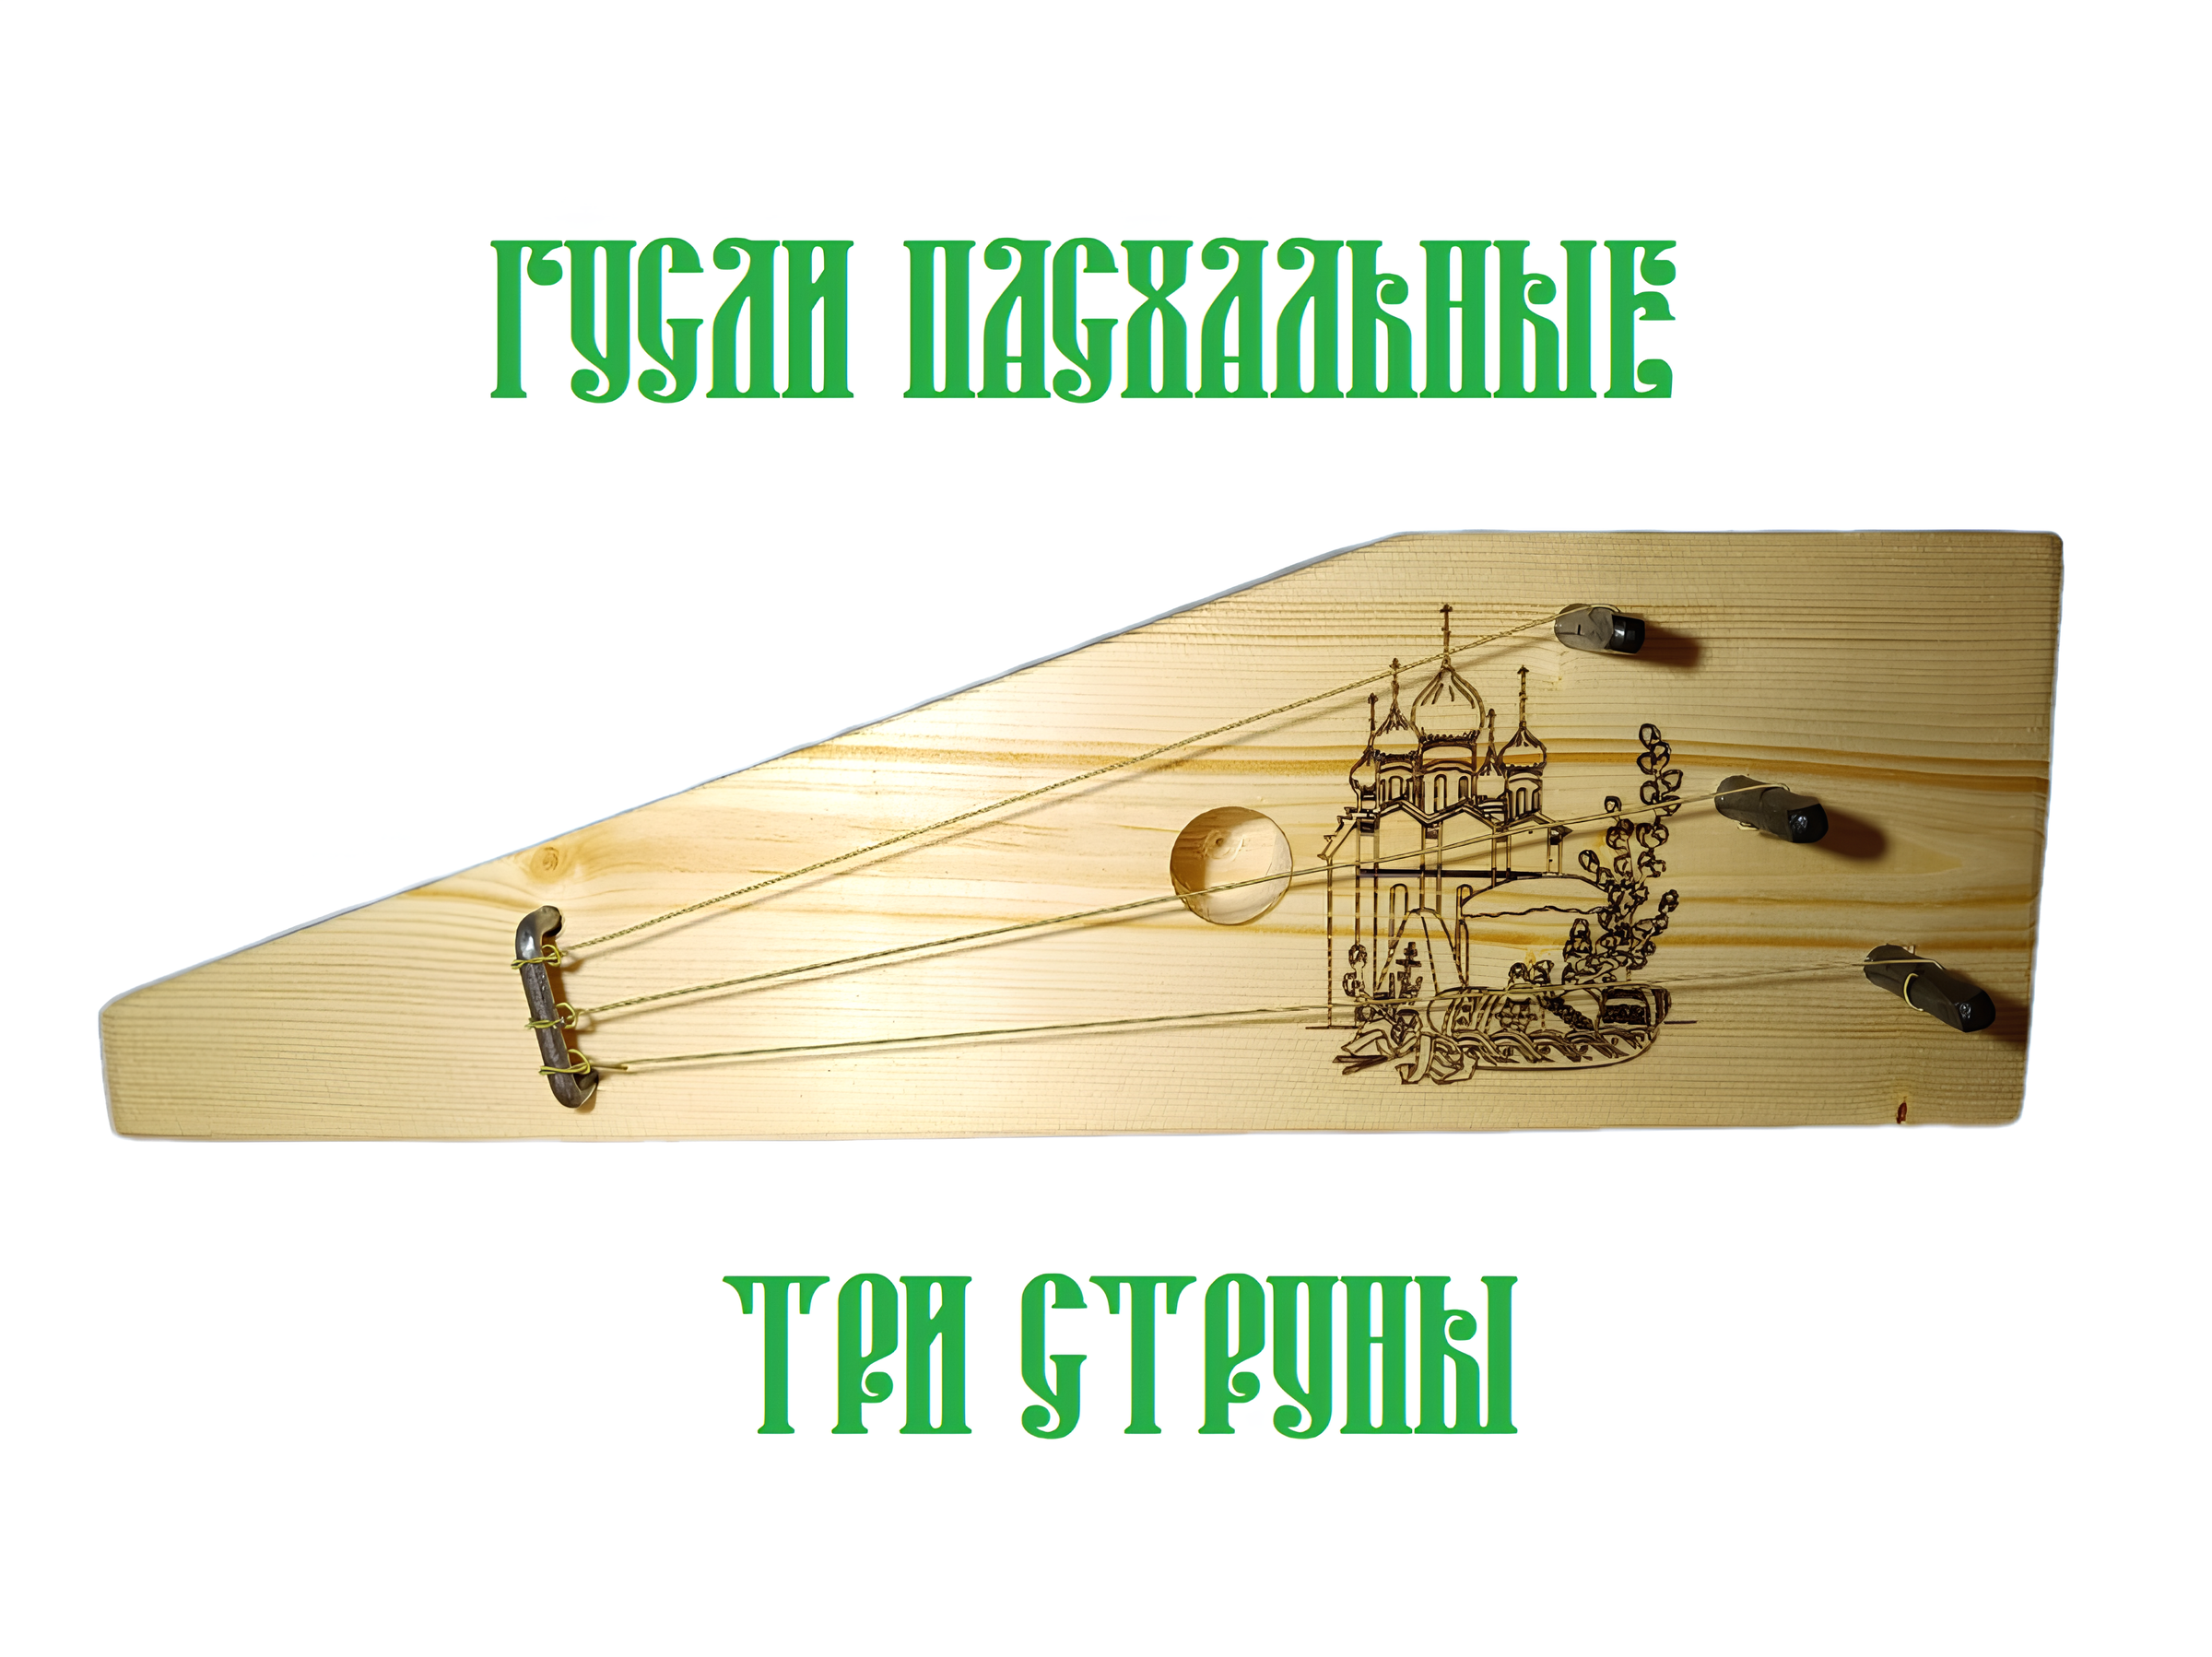 Гусли Пасхальные 3 струны крыловидные народный музыкальный инструмент сувенир с гравировкой